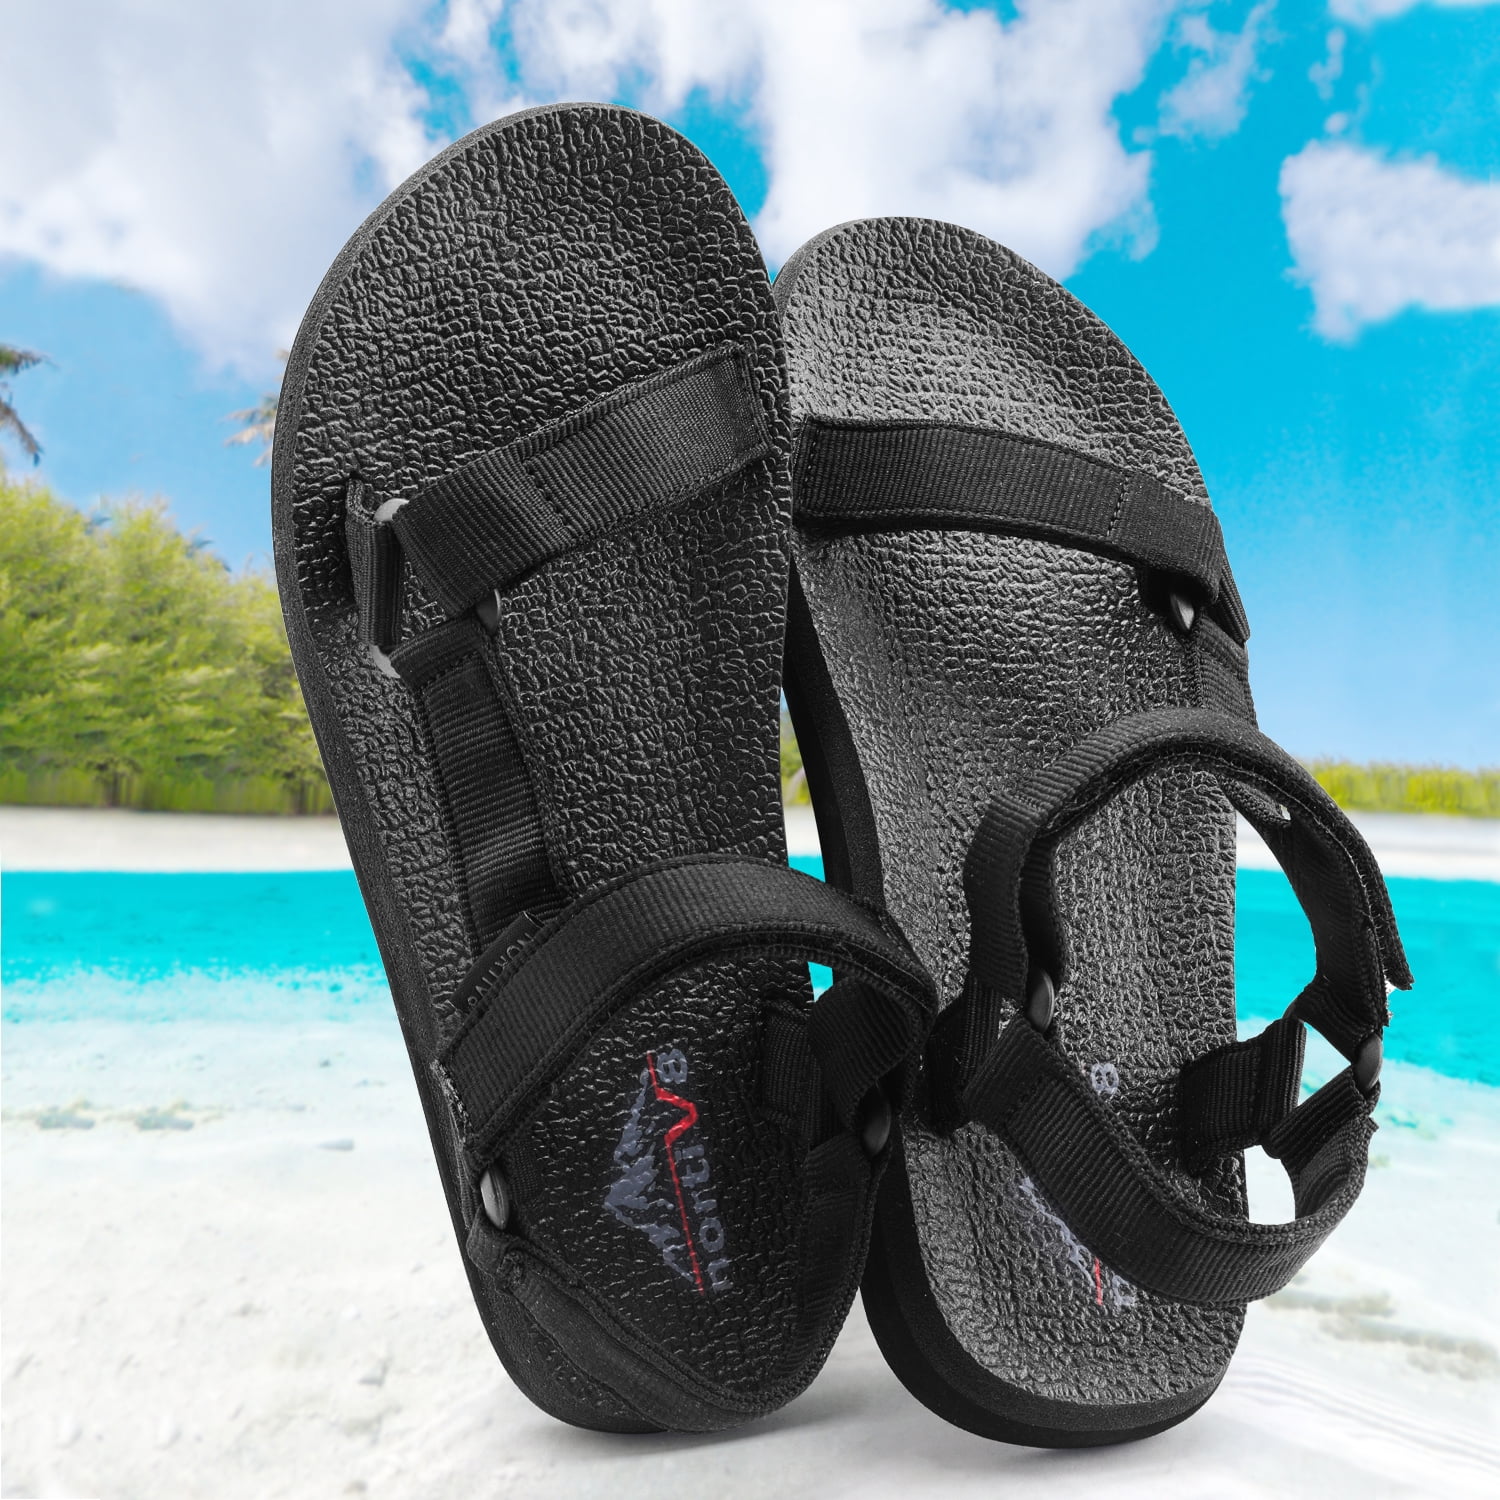 NORTIV 8 Men's Open Toe Sports Sandals Lightweight Summer Outdoor Walking Sandals 